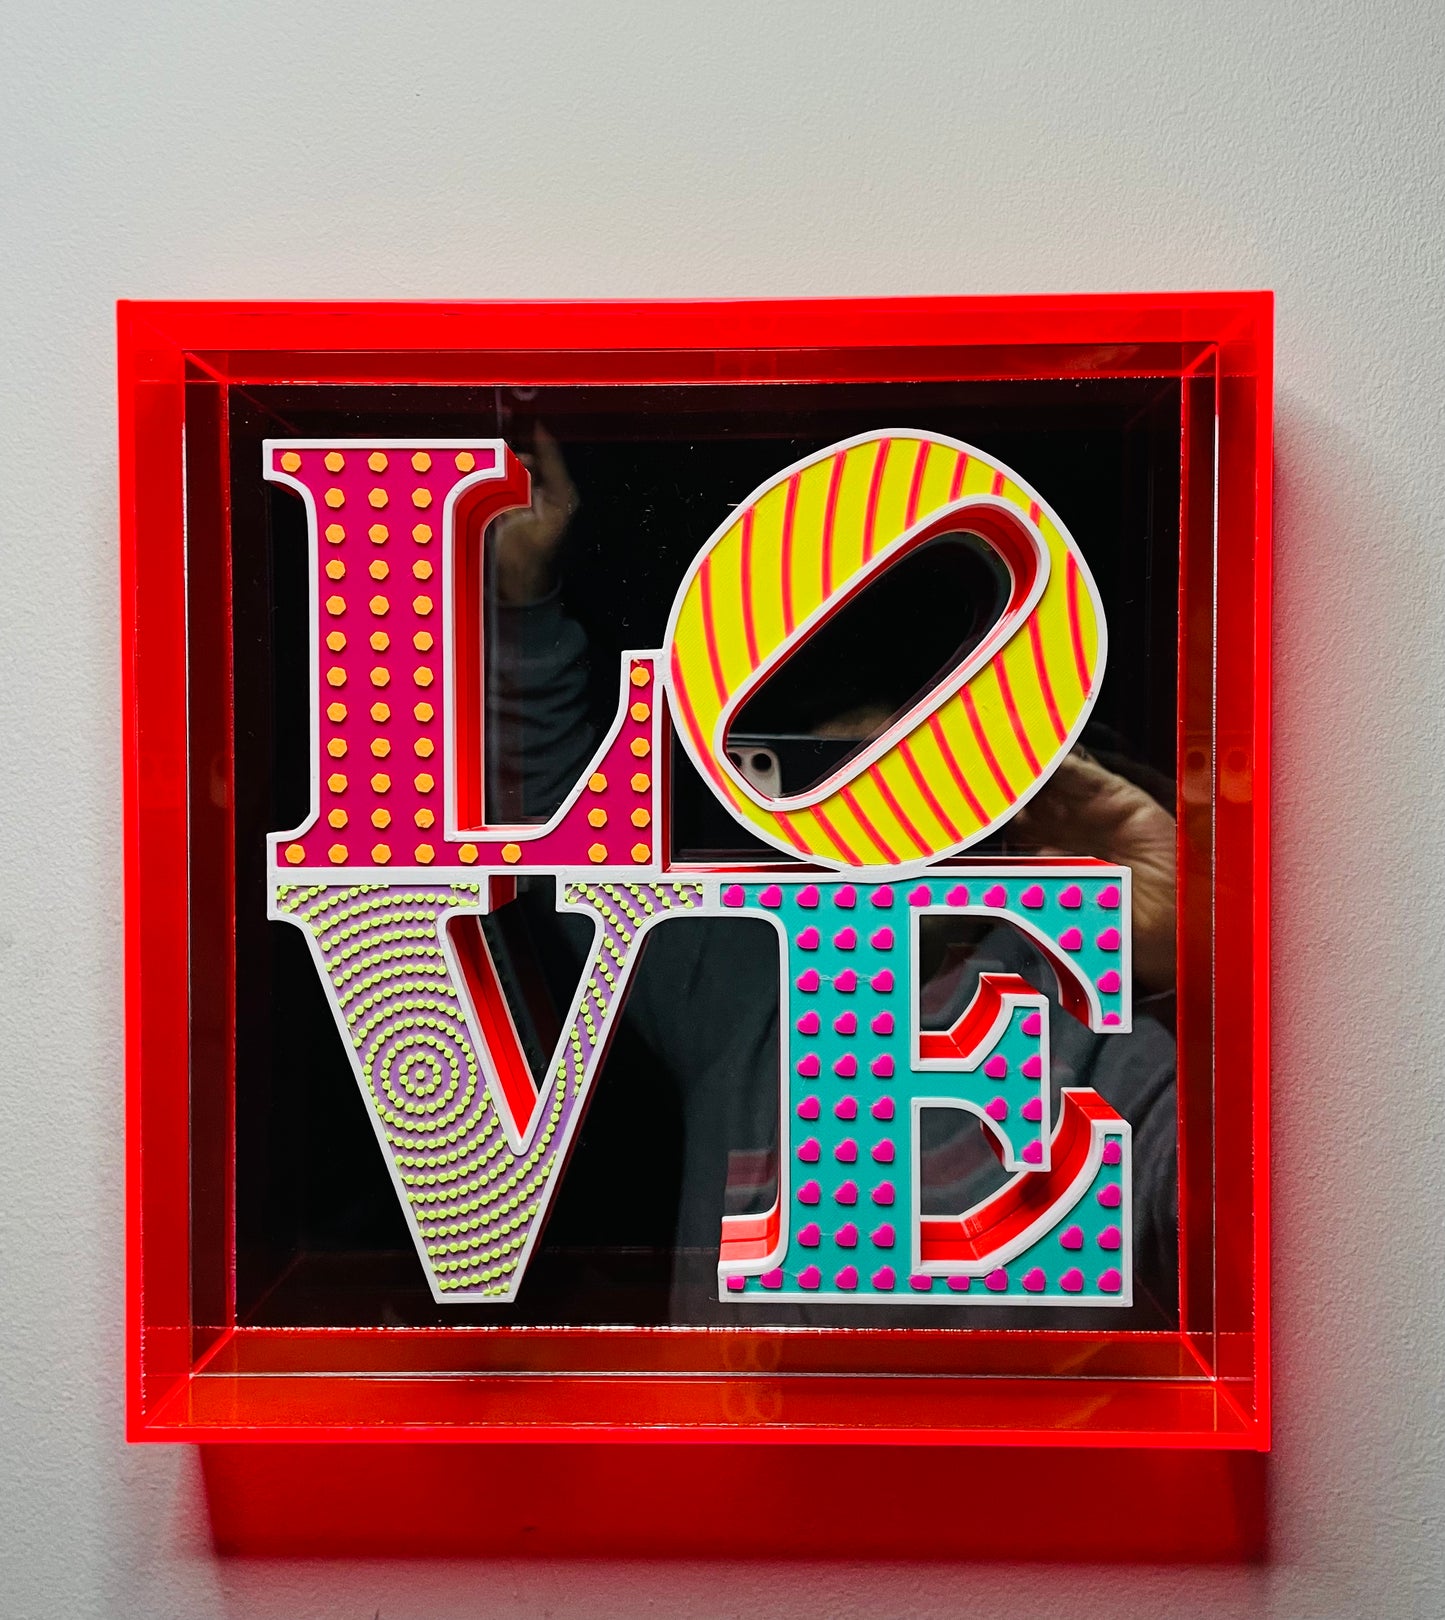 Quadro Pop Art 3D "MIRROR LOVE!" a Mosaico